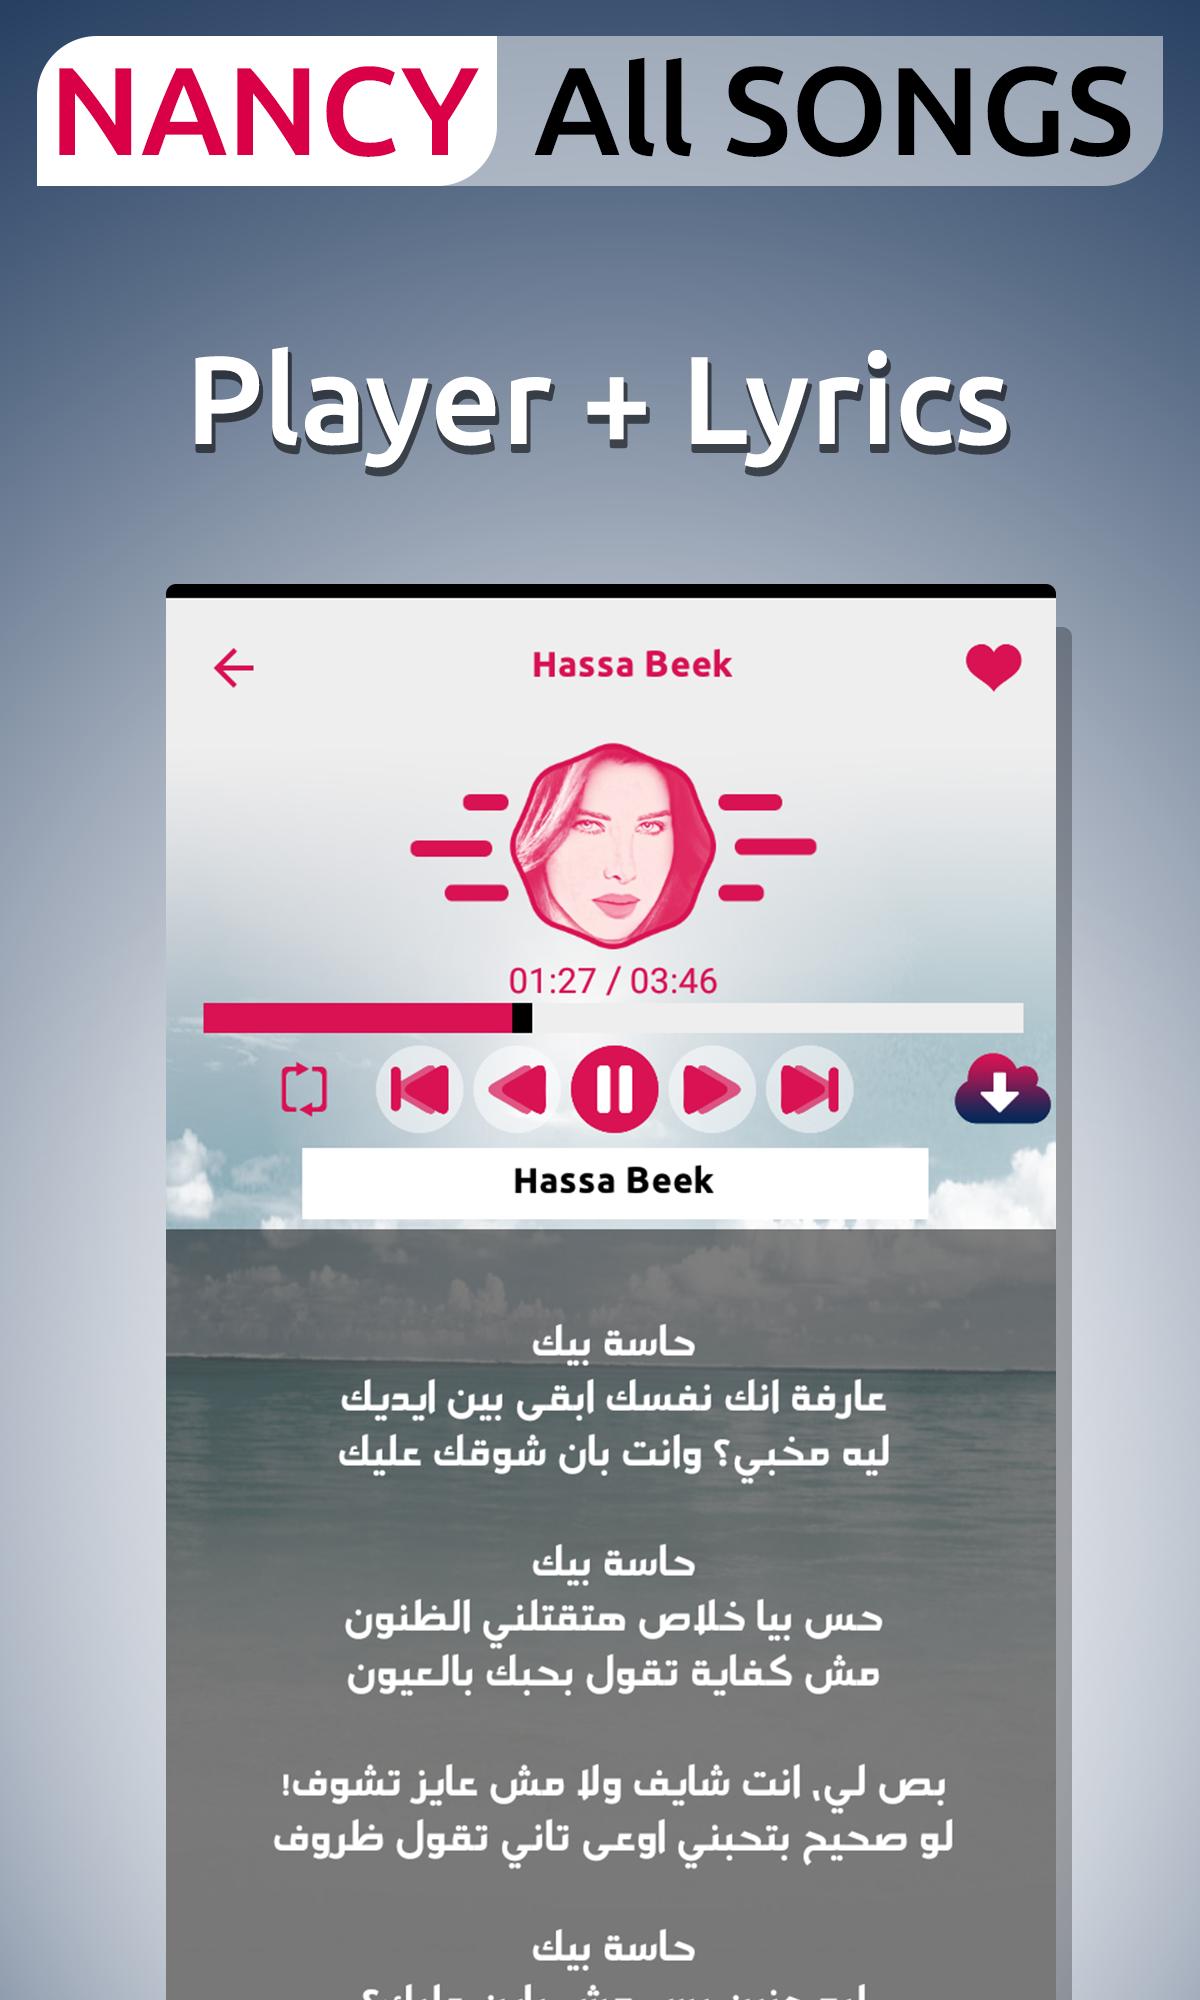 نانسي عجرم - أغاني وكلمات for Android - APK Download